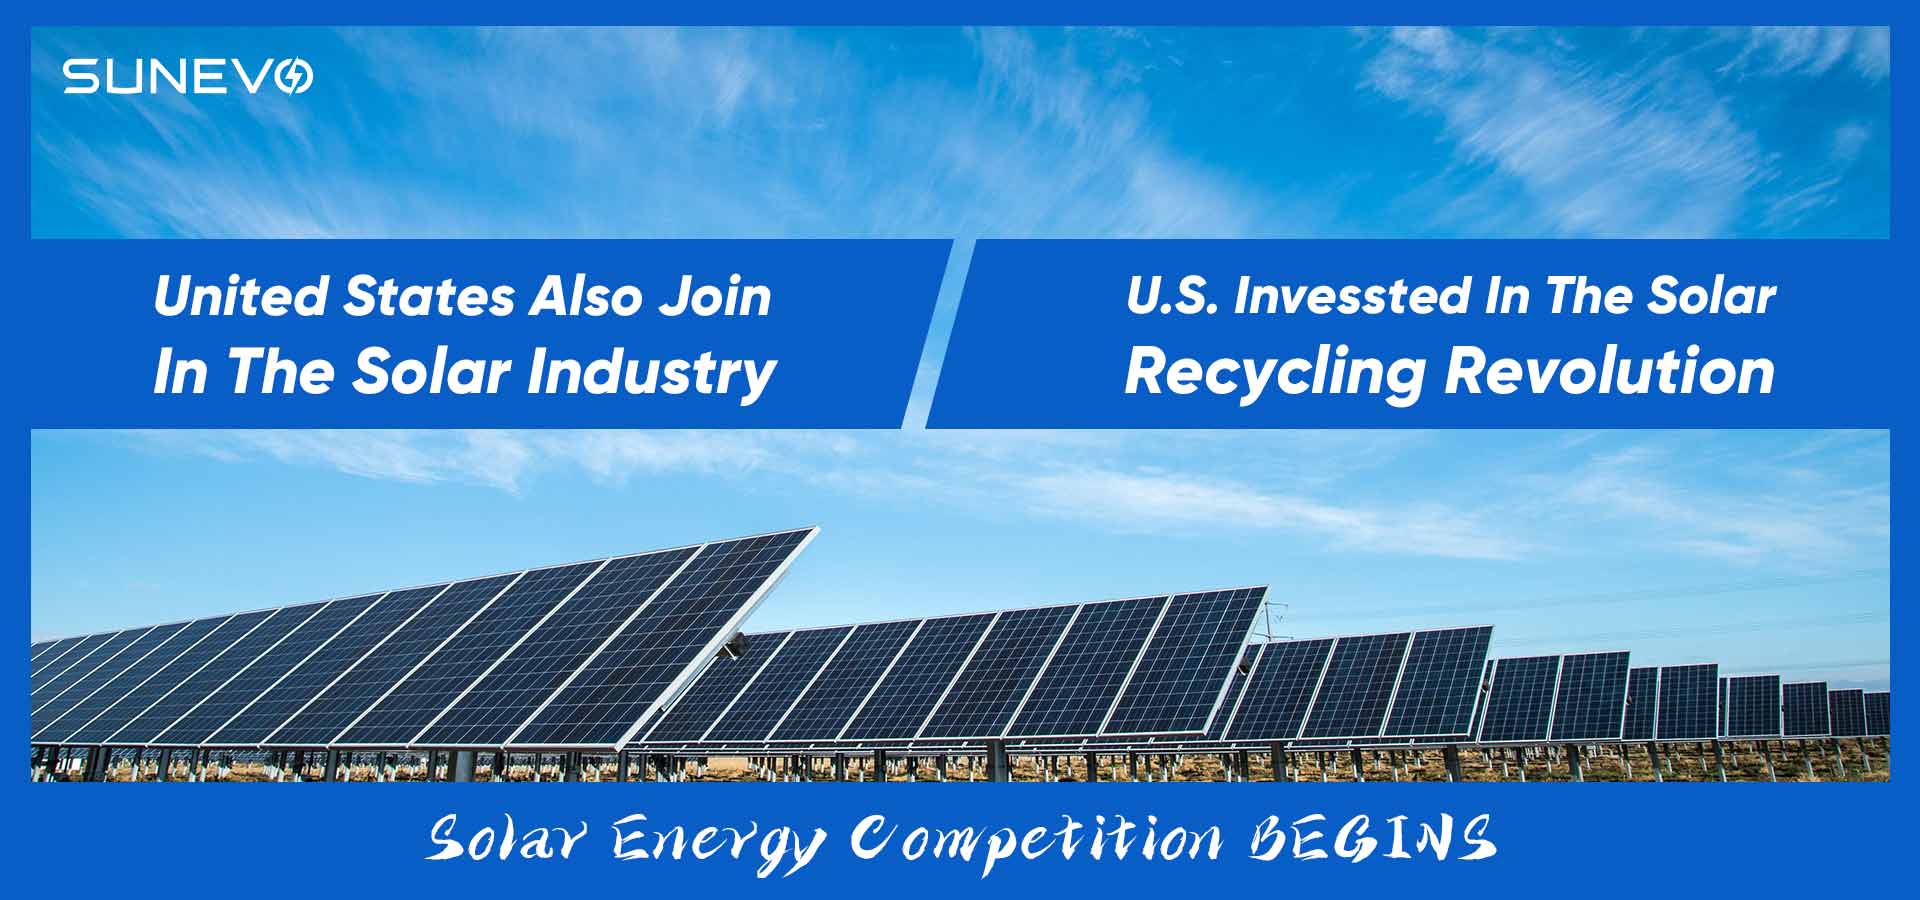 Inwestycje USA w rewolucję w zakresie recyklingu energii słonecznej